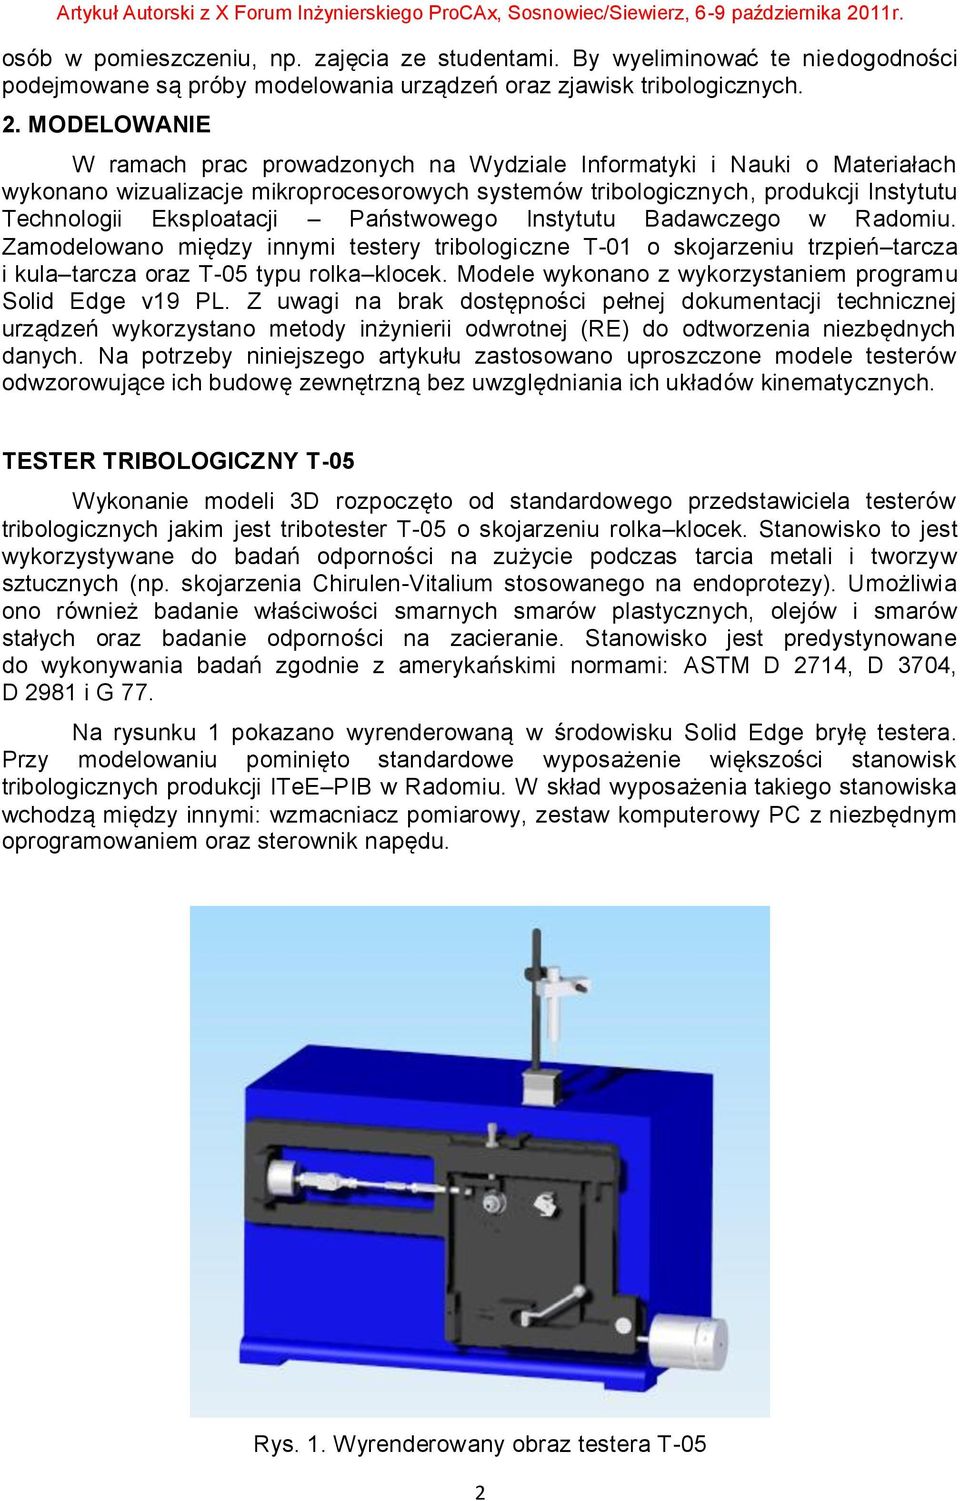 Państwowego Instytutu Badawczego w Radomiu. Zamodelowano między innymi testery tribologiczne T-01 o skojarzeniu trzpień tarcza i kula tarcza oraz T-05 typu rolka klocek.